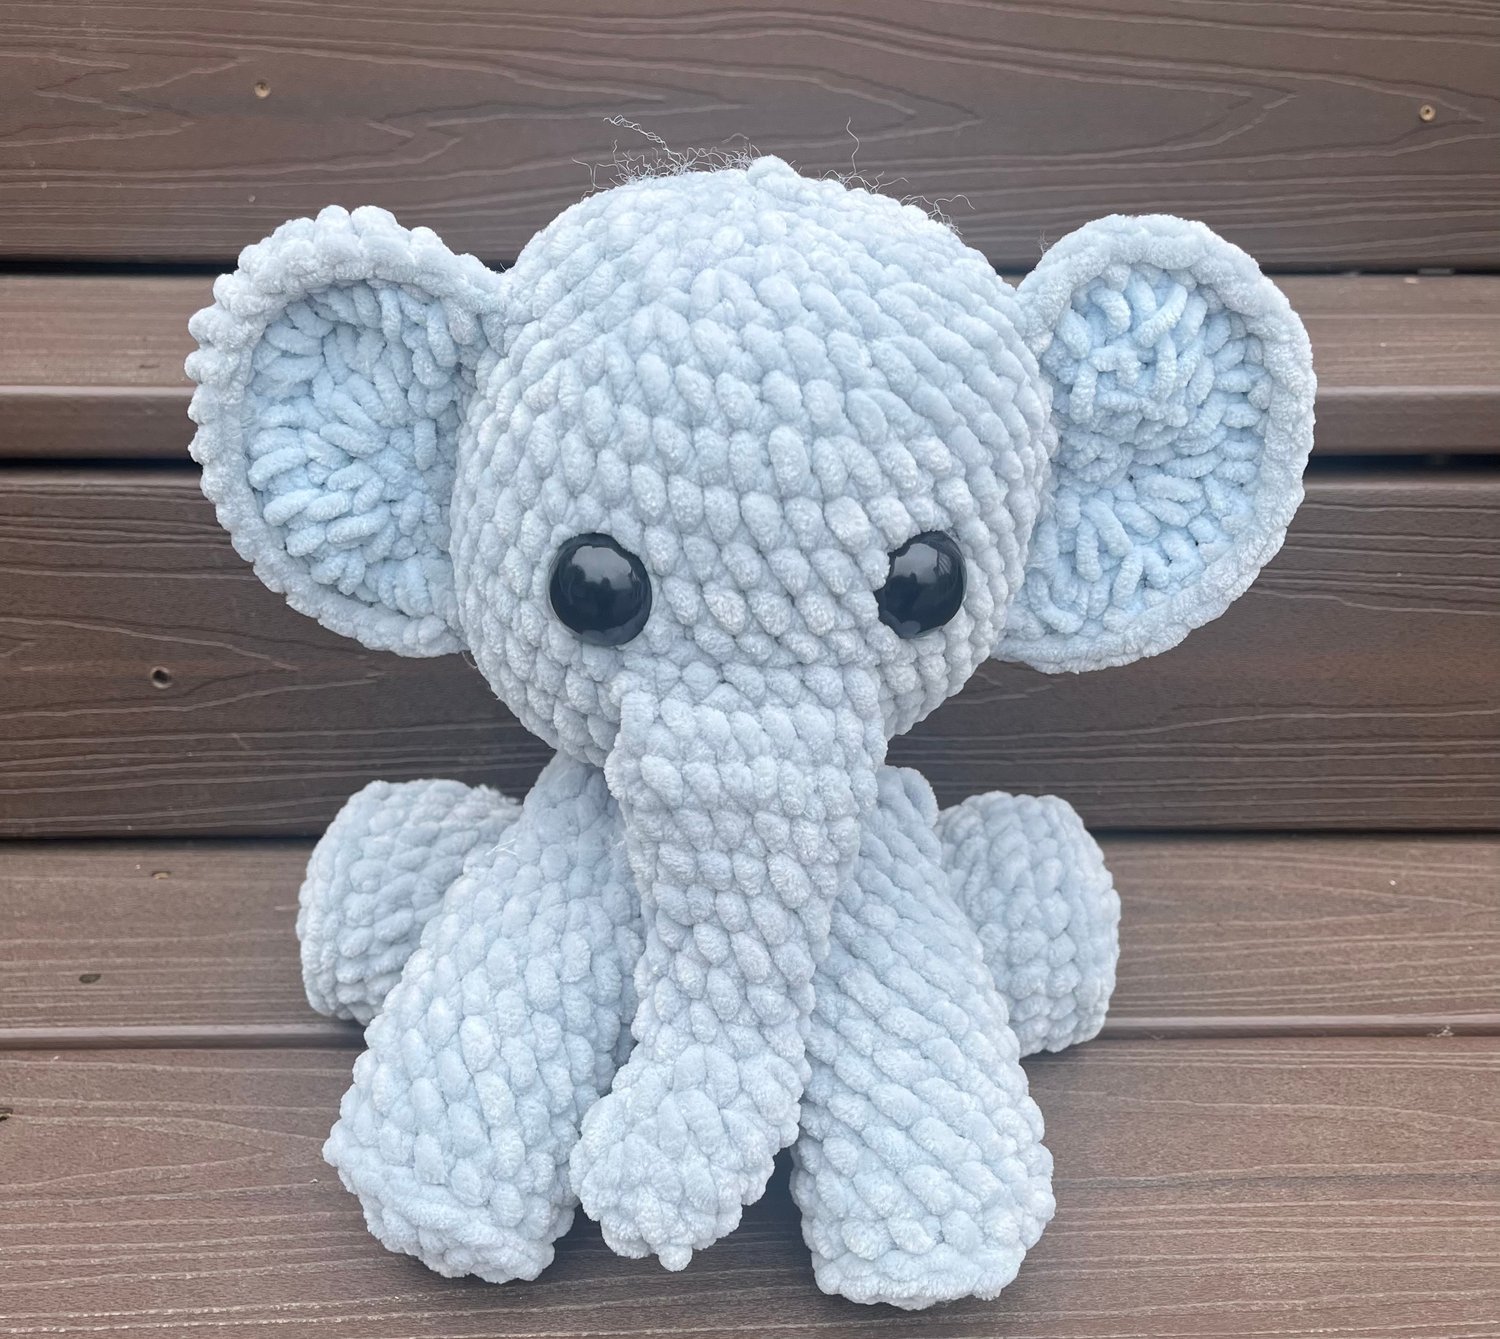 Image of Crochet Plush Sitting Elephant